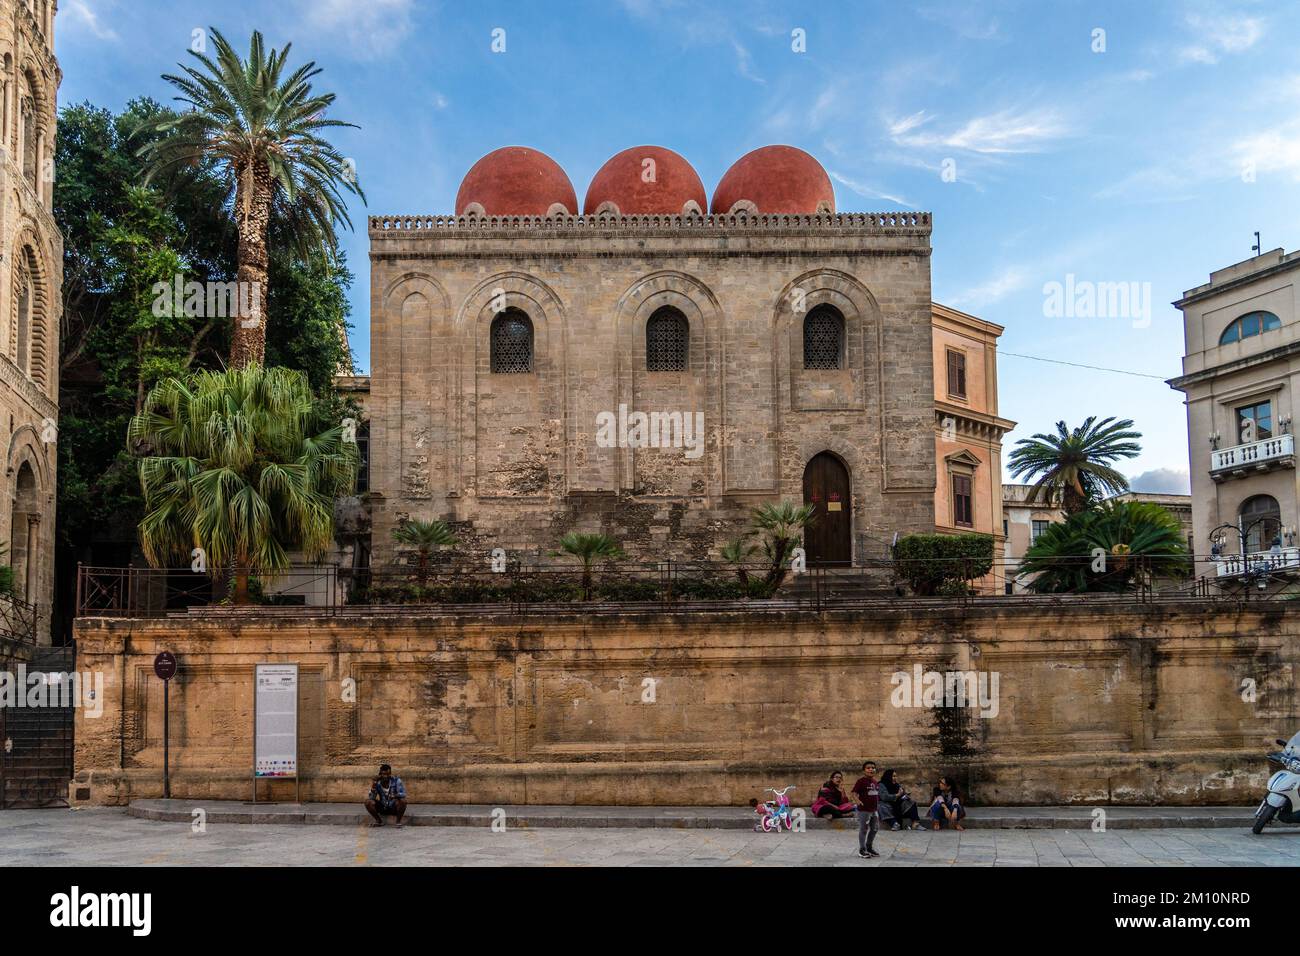 Die Kirche San Cataldo, ein Beispiel des normannisch-bizantinischen Stils in Palermo, Sizilien. Es ist bekannt durch seine drei roten Kuppeln. Italien. Stockfoto